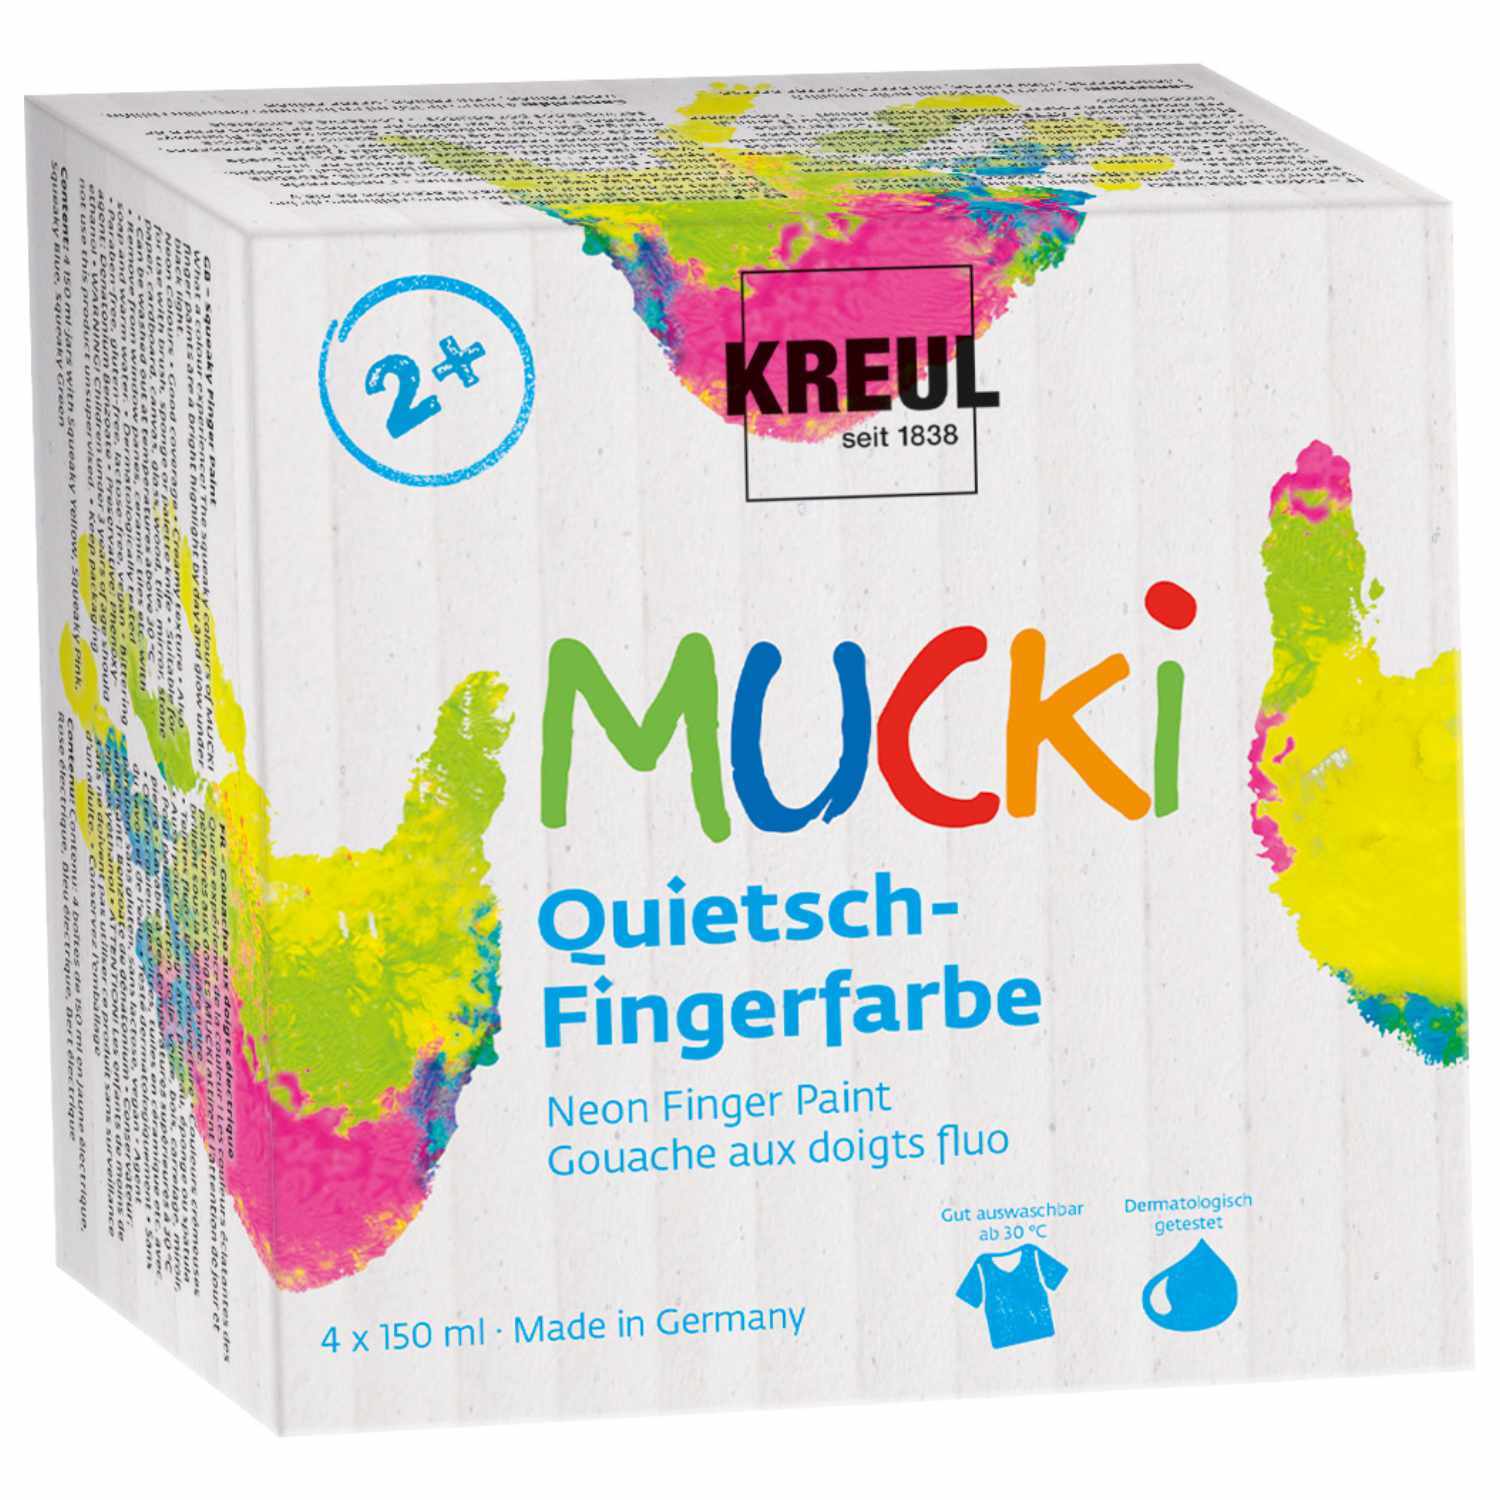 MUCKI Quietsch-Fingerfarbe 4 Farben neon